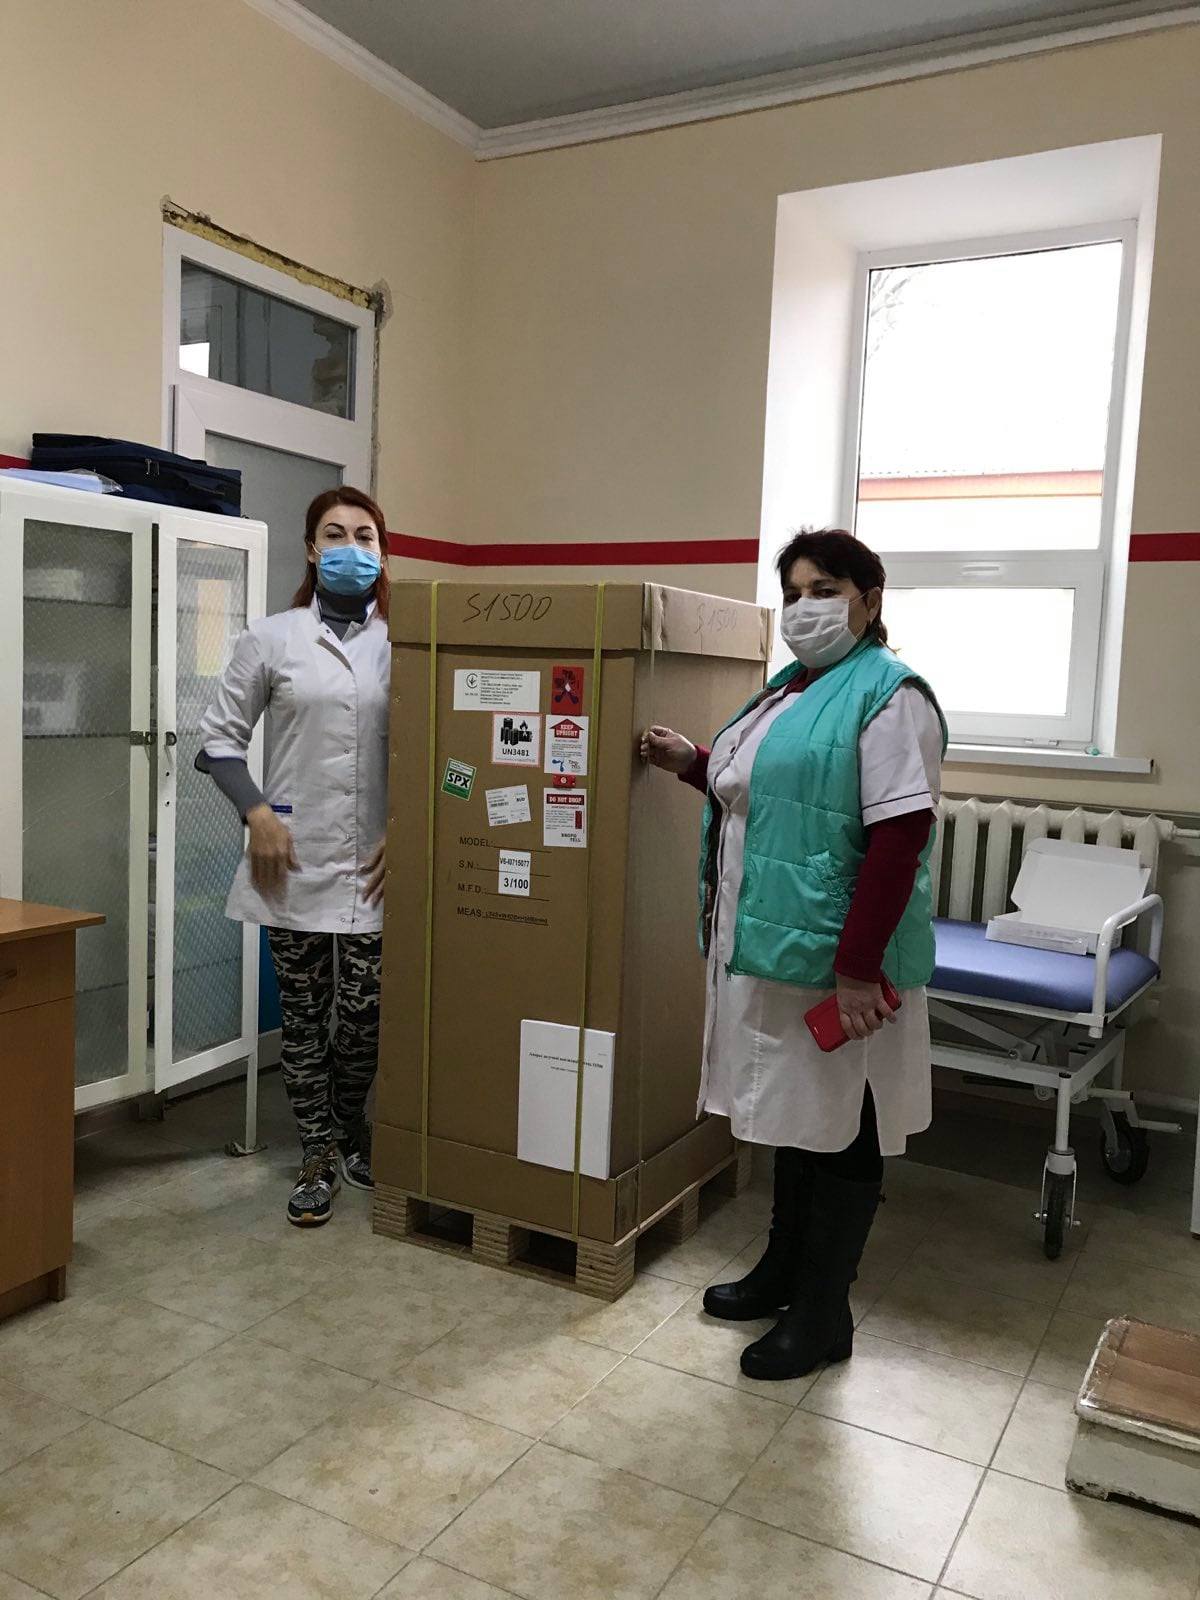 Измаильская районная больница получила от области аппарат ИВЛ